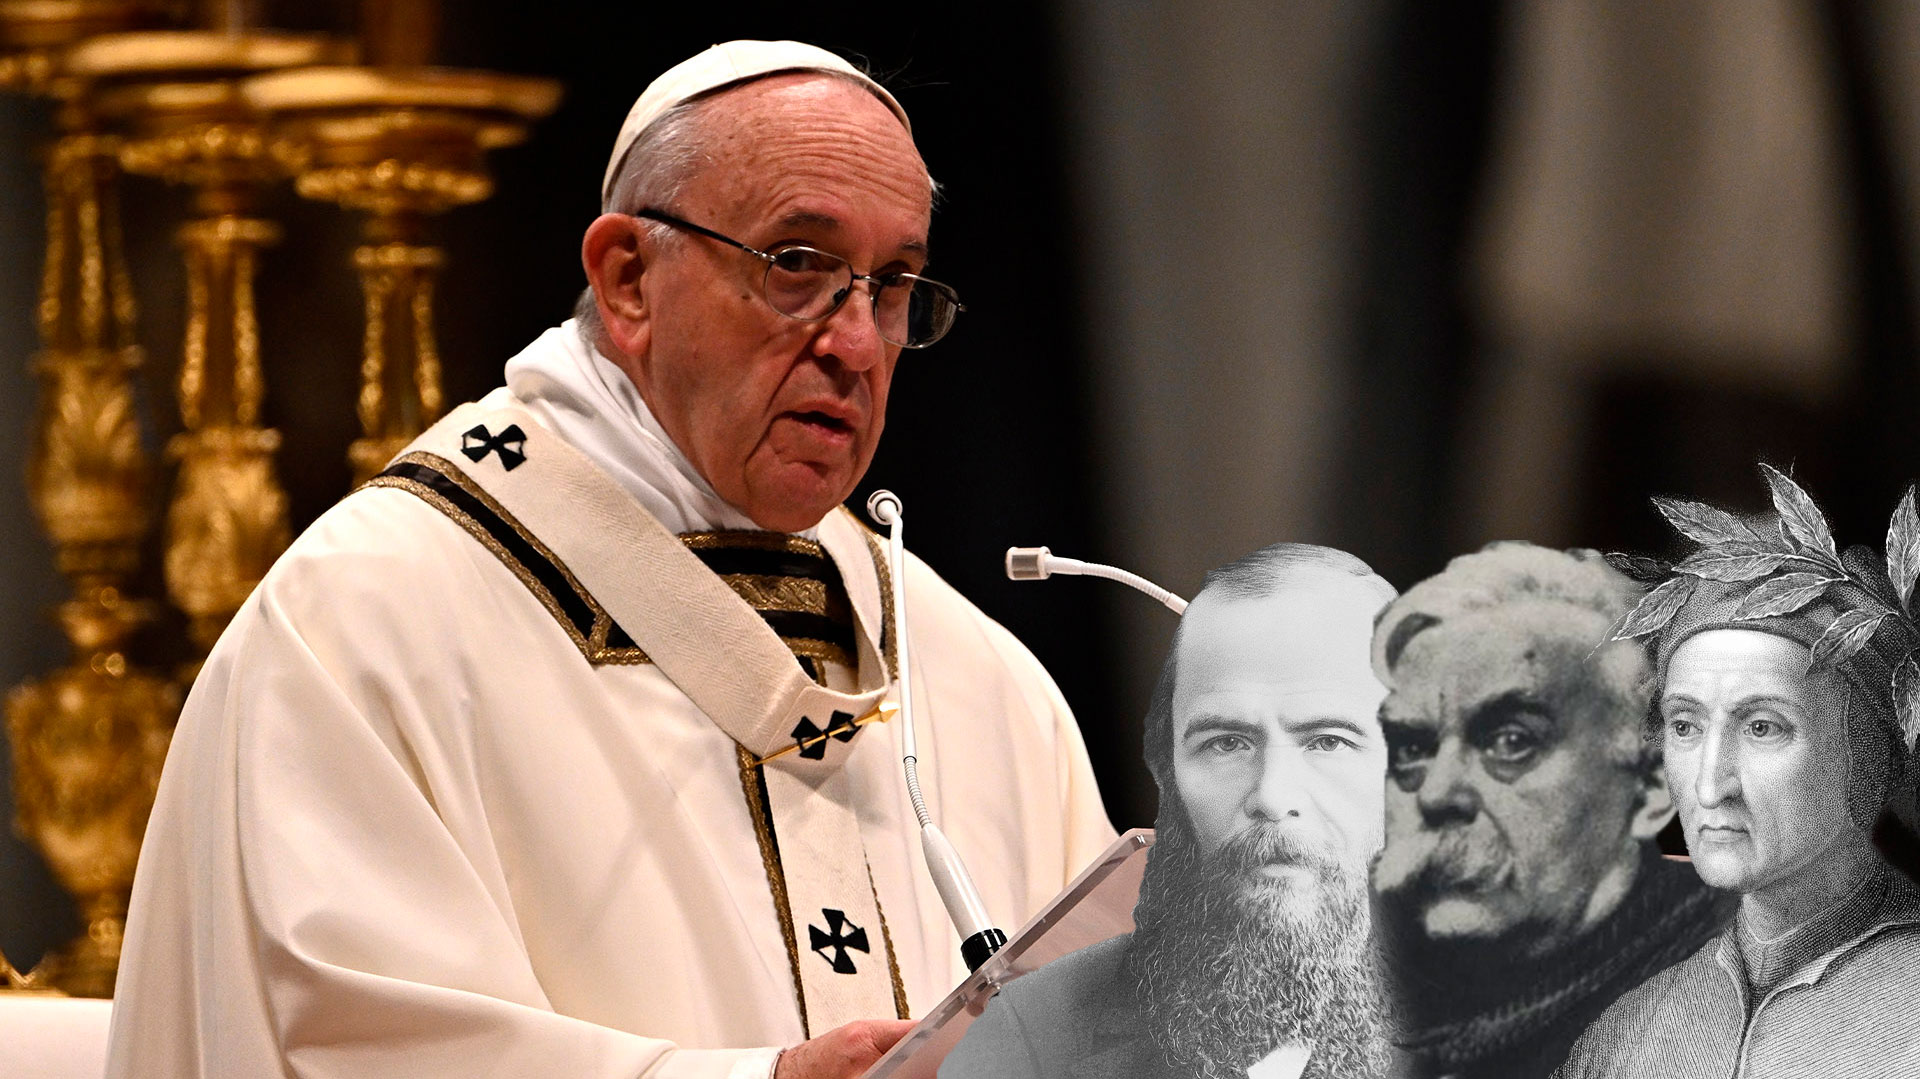 El papa Francisco nombró a sus tres escritores favoritos: un ruso, un francés y un italiano